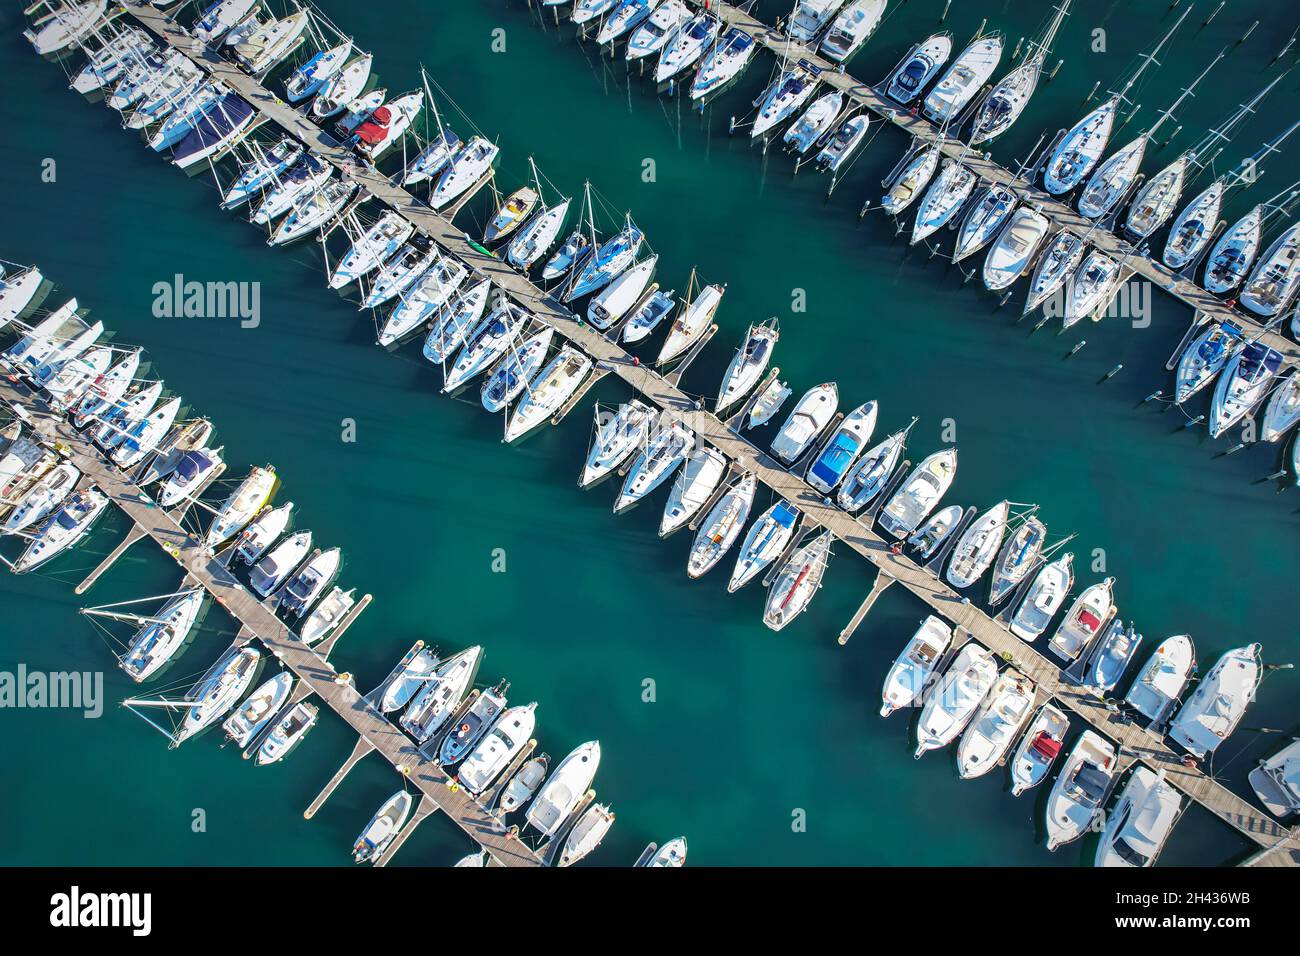 Luftaufnahme der Marina Docks mit Booten, die dort festgemacht sind. Rimini, Italien - Oktober 2021 Stockfoto